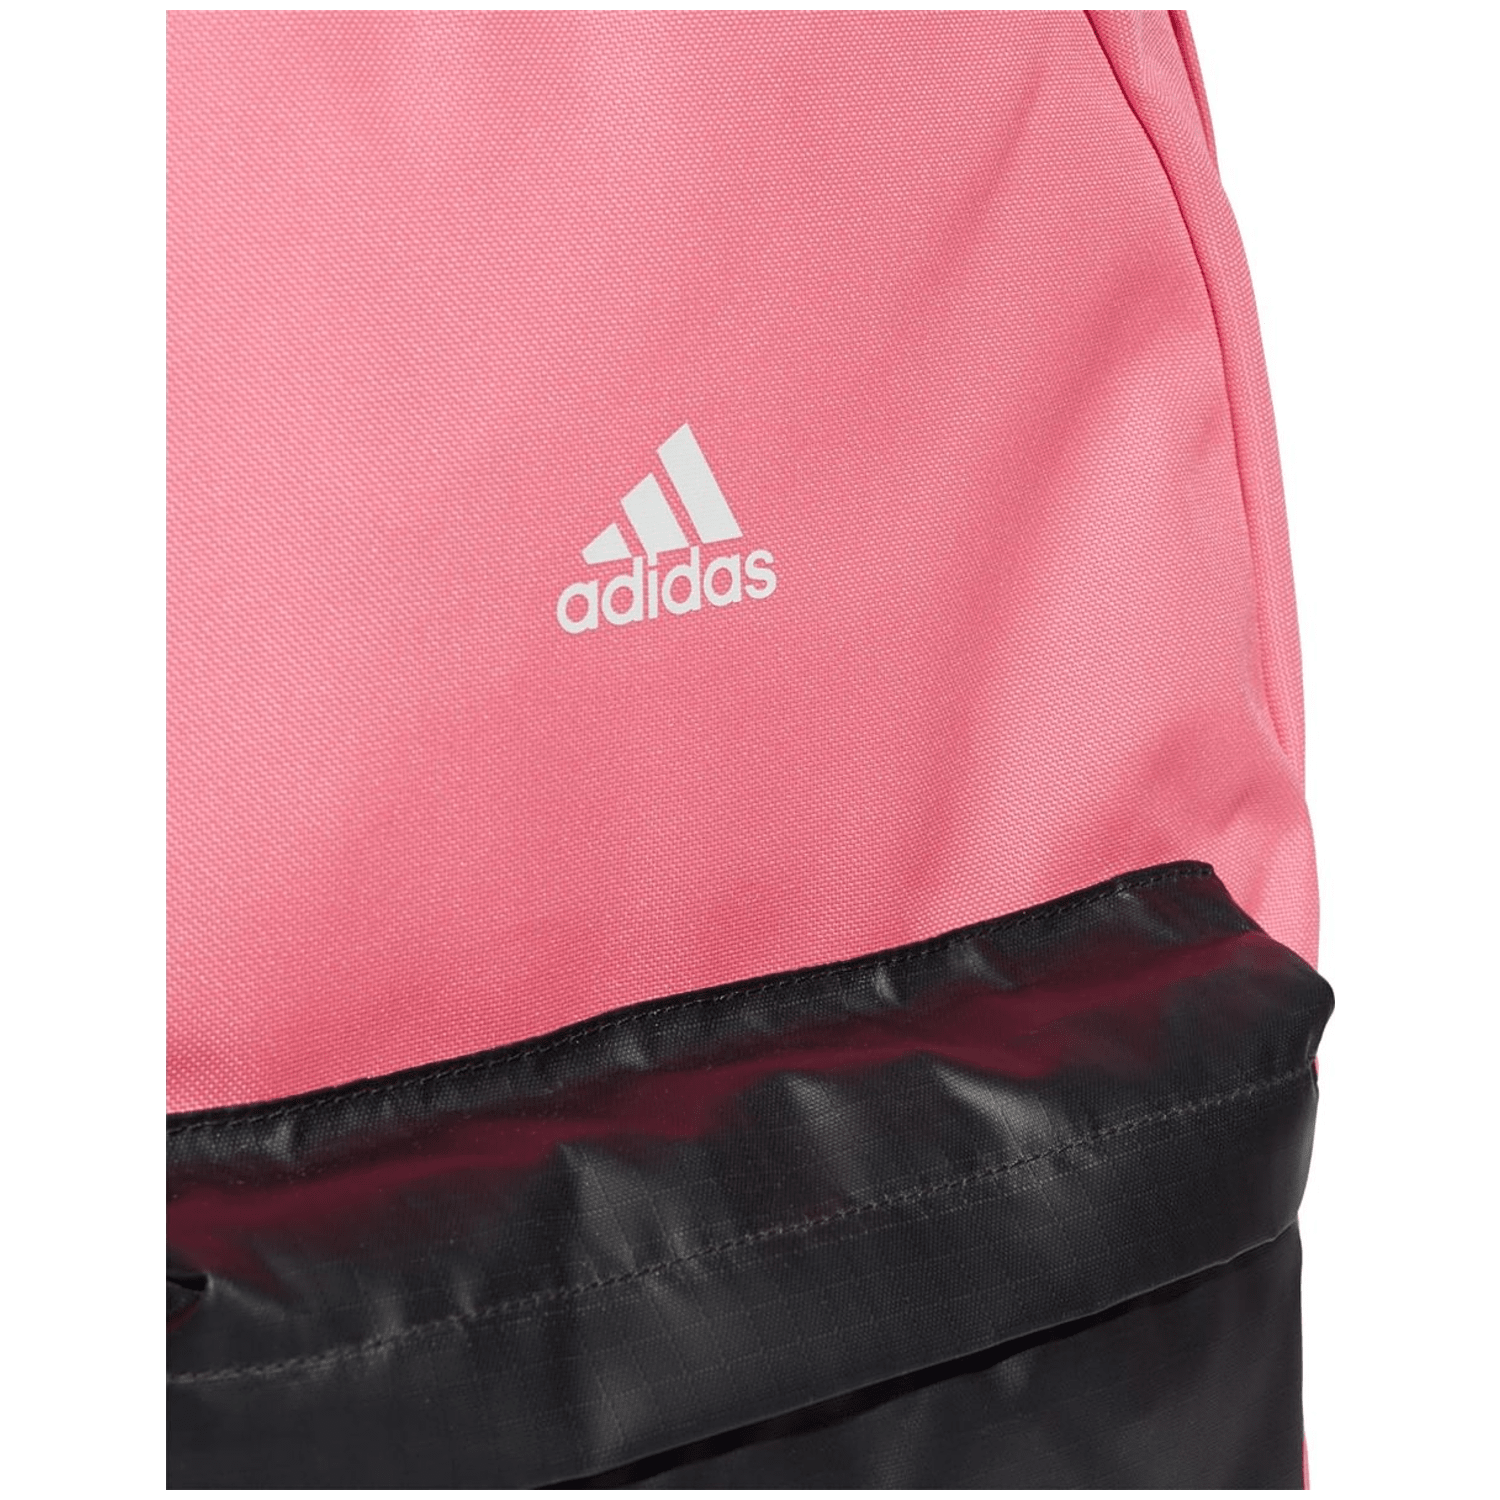 Adidas Classic Badge of Sport 3-Streifen Unisex